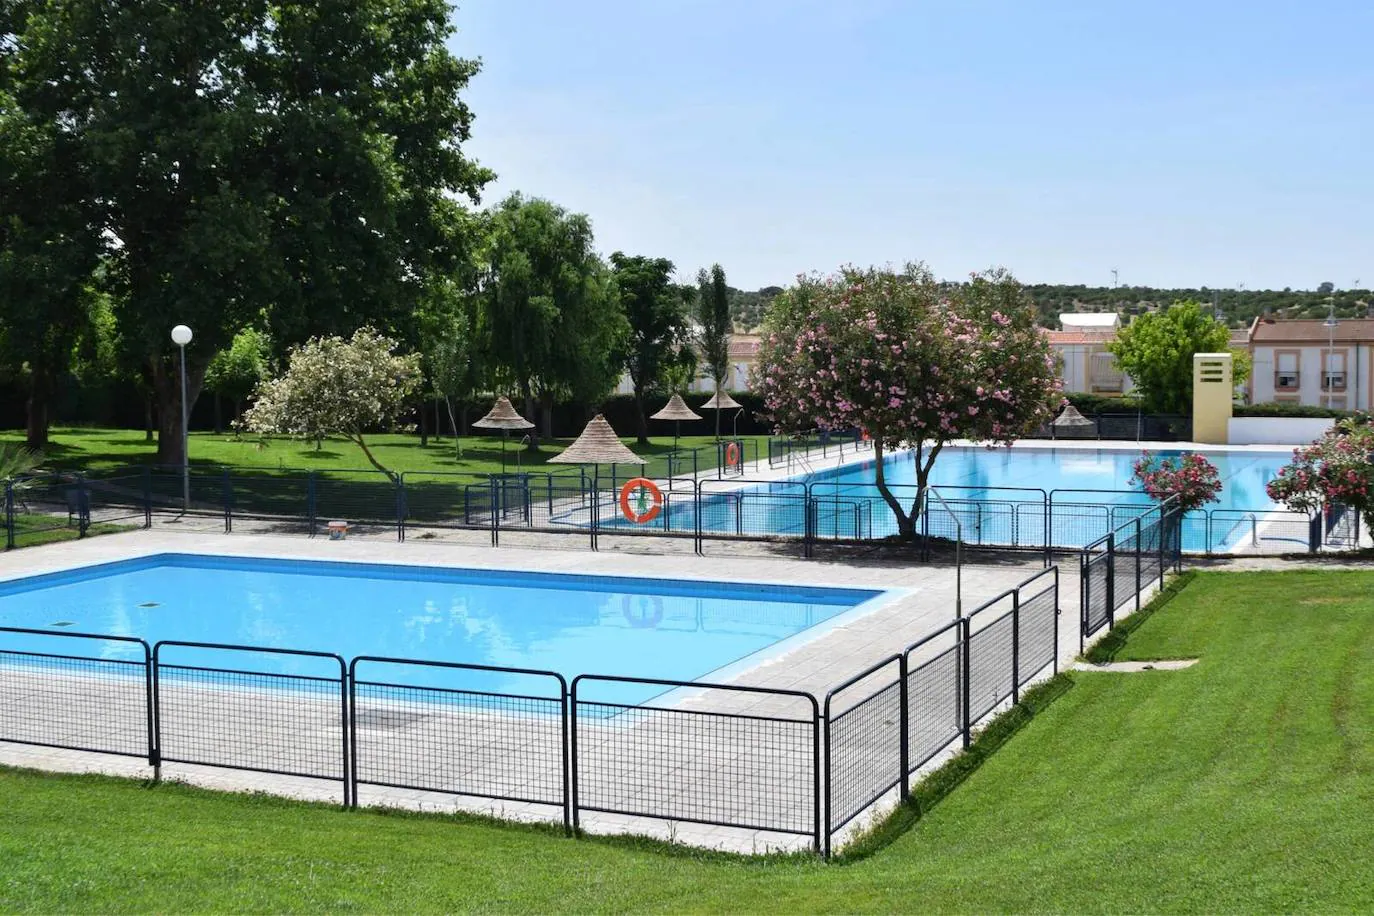 La piscina de verano abre sus puestas este sábado 22 de junio